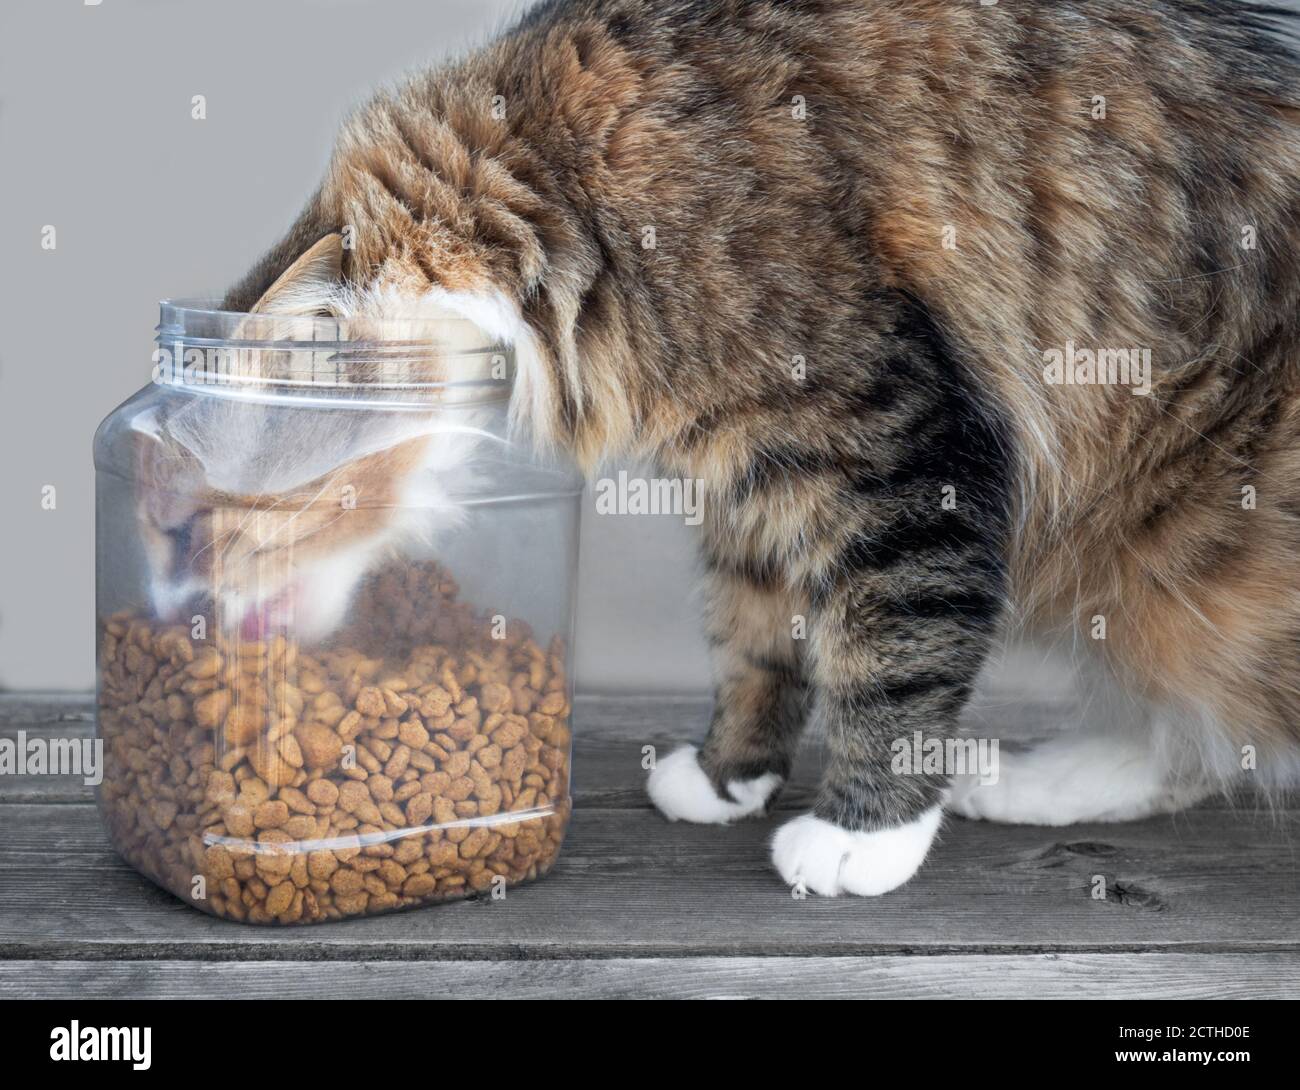 Katze mit Kopf in Futtereimer, essen Kibbles. Leicht gefrostete Futterbehälter oder -Behälter, gefüllt mit trockenem Katzenfutter. Unstillbarer Appetit. Flauschige Calico oder t Stockfoto